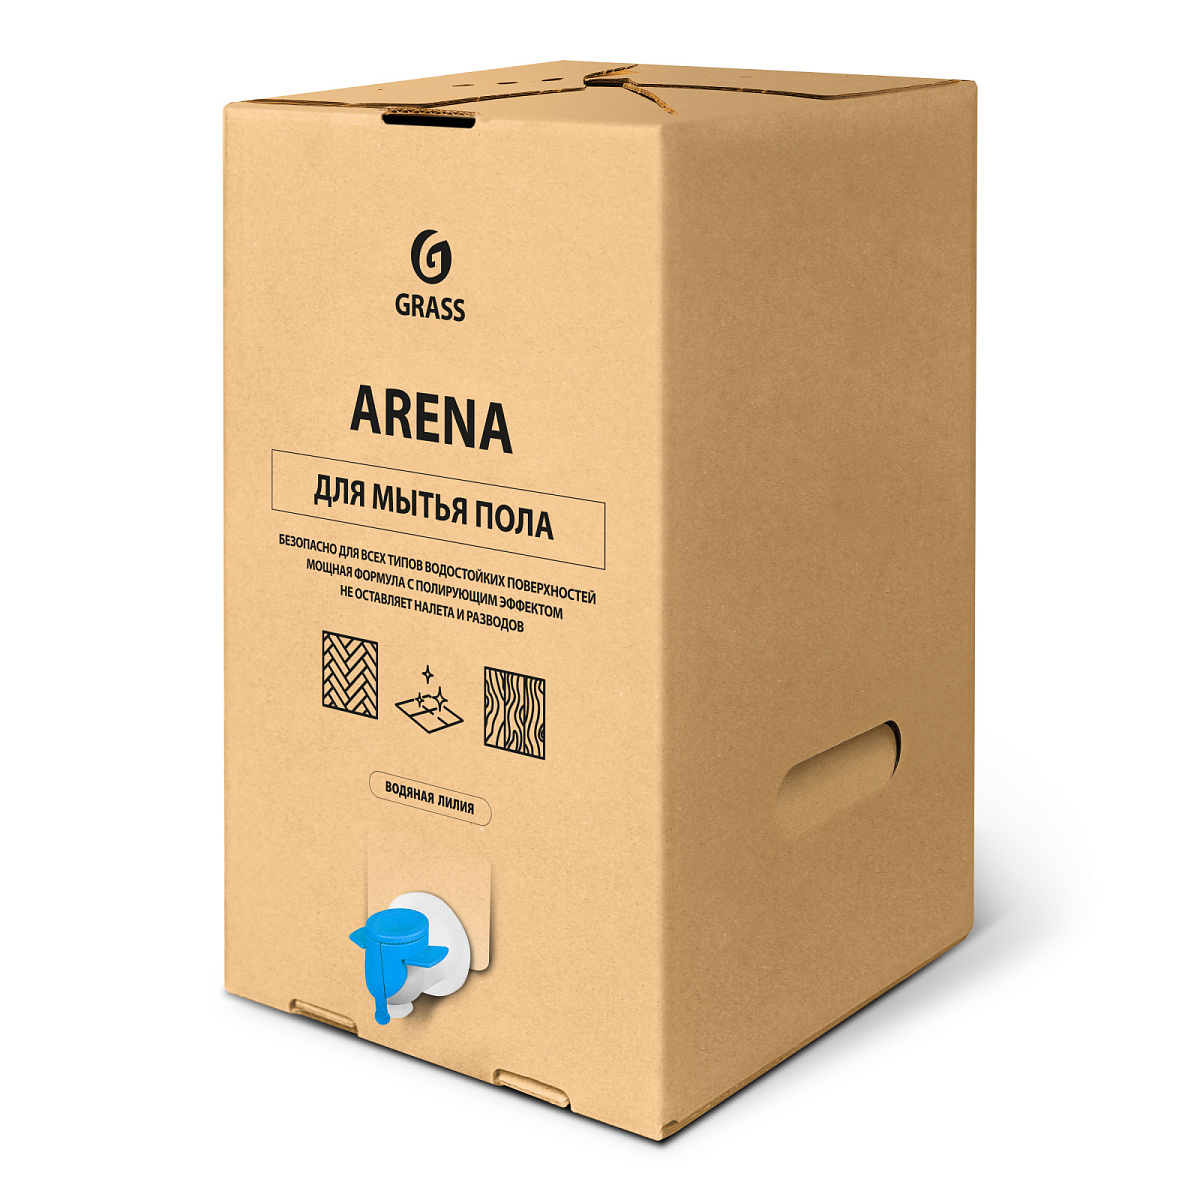 Средство с полирующим эффектом для пола "Arena Водяная лилия" (bag-in-box 20,1 кг)